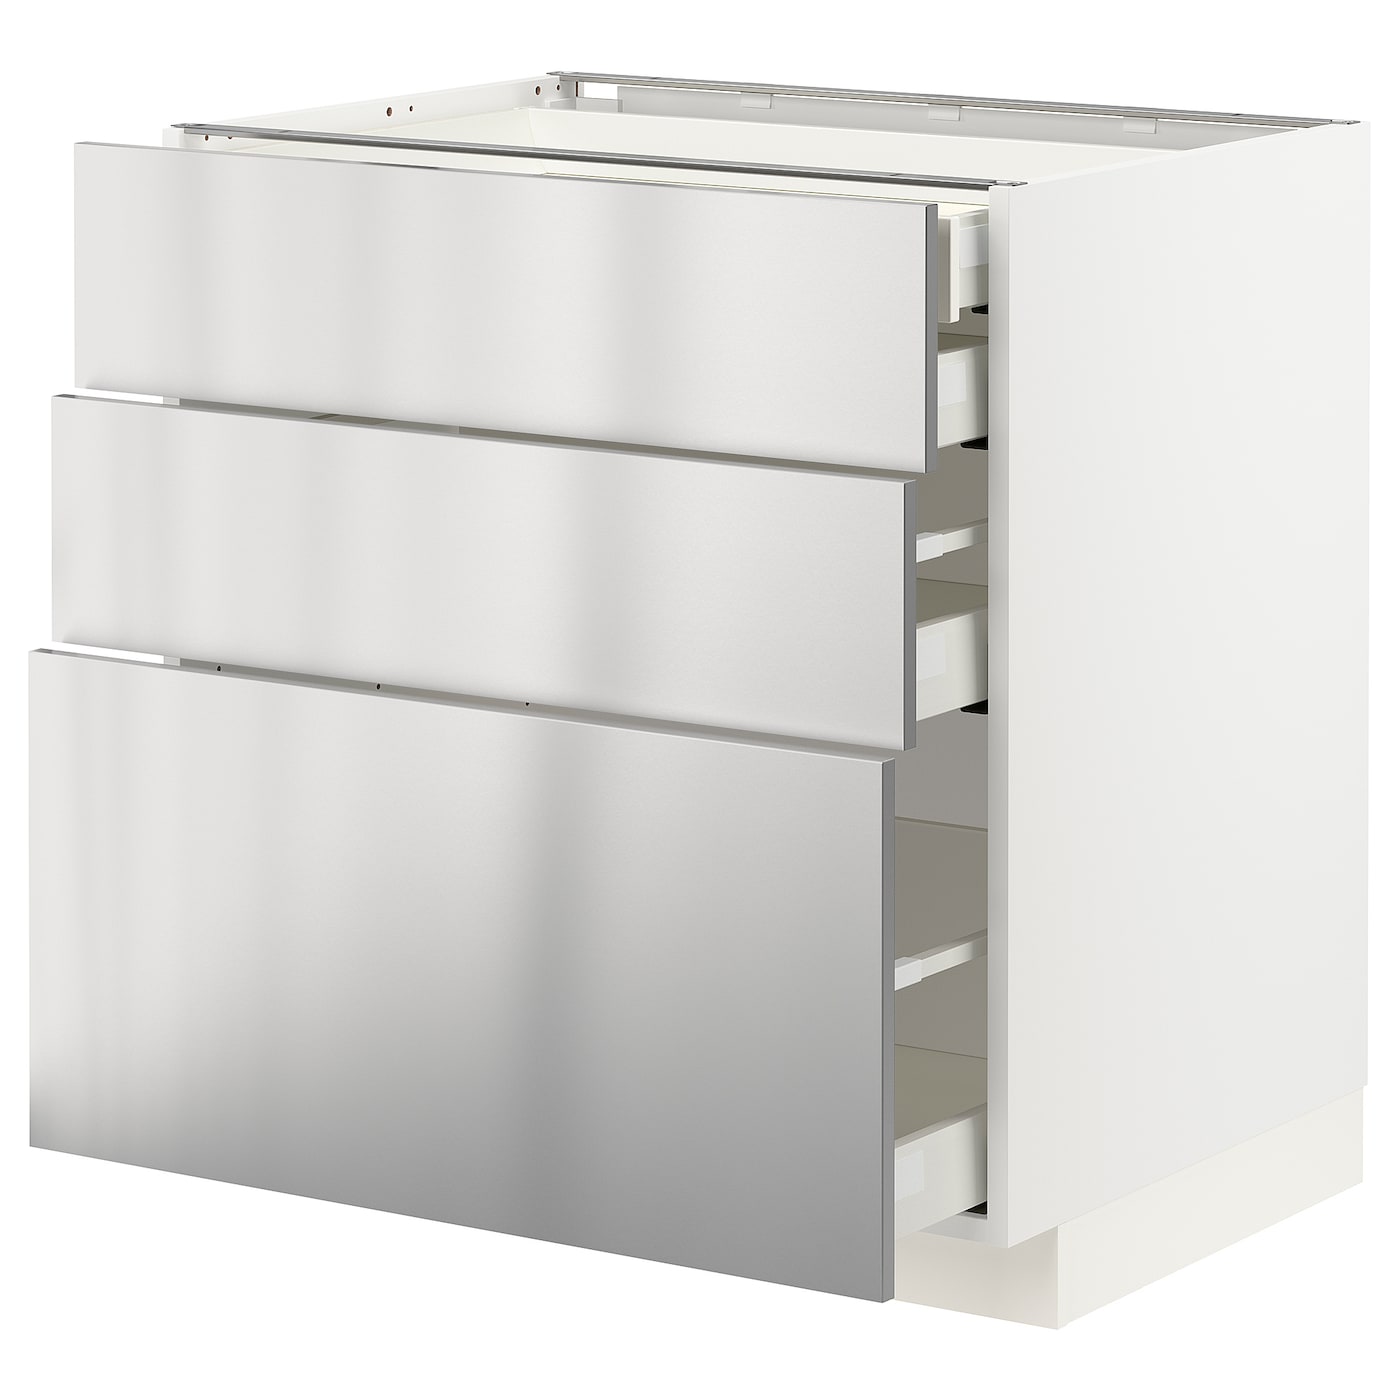 Напольный шкаф  - IKEA METOD MAXIMERA, 88x61,6x80см, белый/светло-серый, МЕТОД МАКСИМЕРА ИКЕА